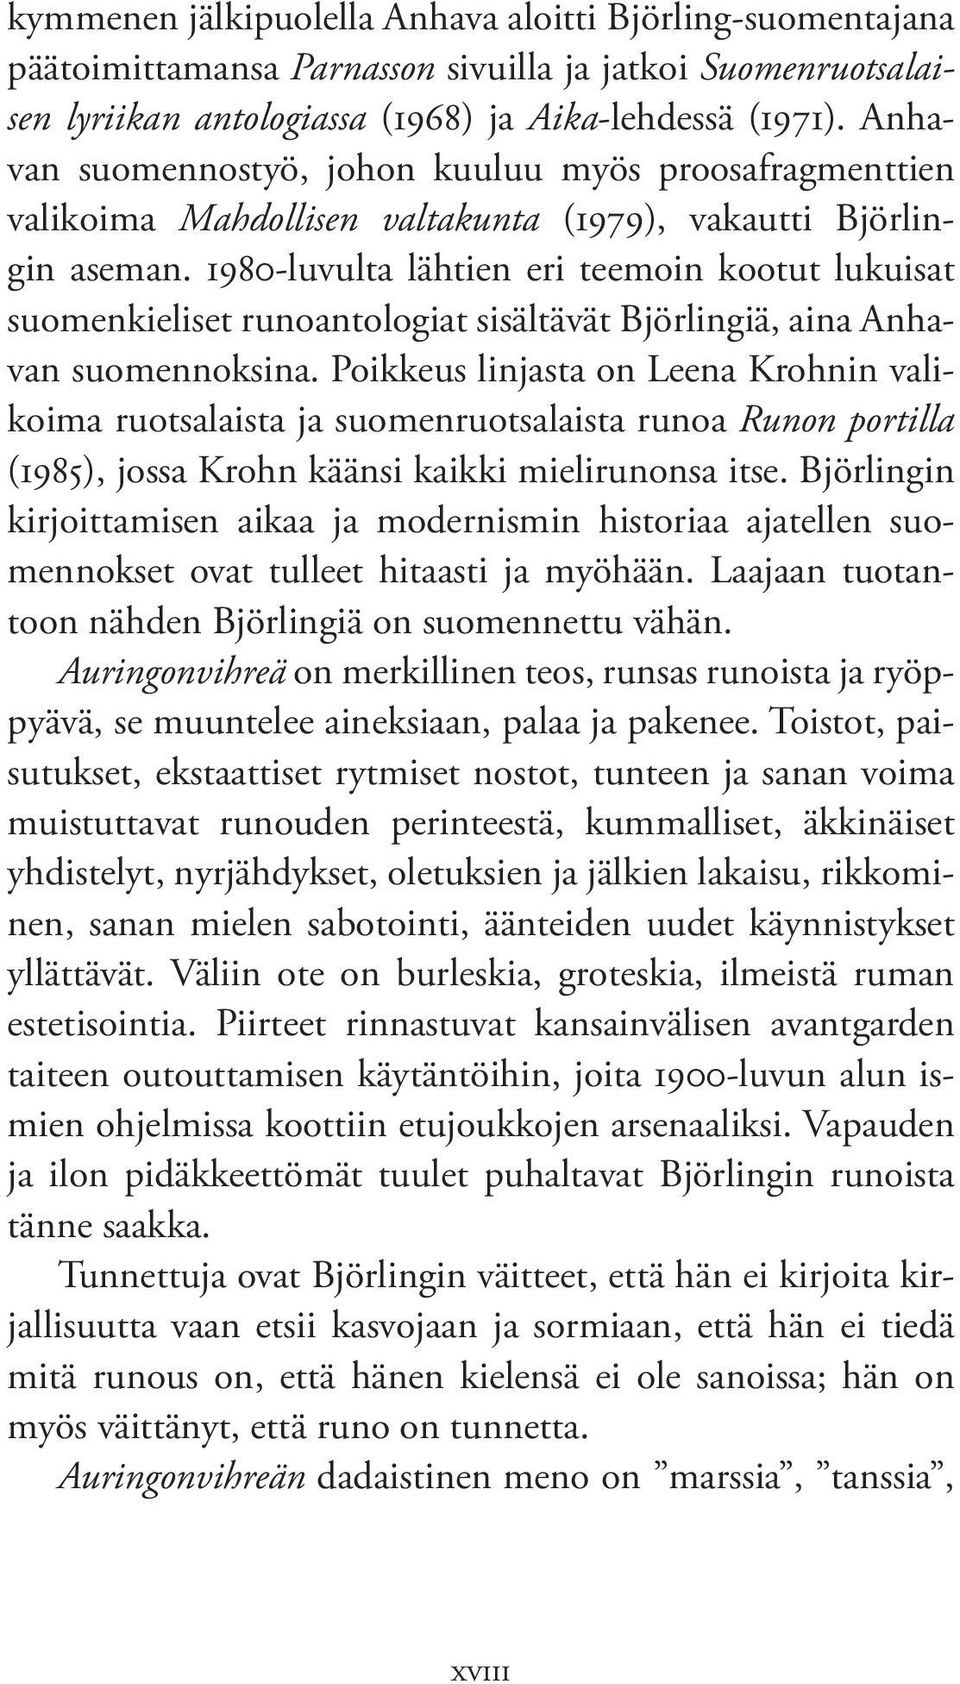 1980-luvulta lähtien eri teemoin kootut lukuisat suomen kieliset runoantologiat sisältävät Björlingiä, aina Anhavan suomennoksina.